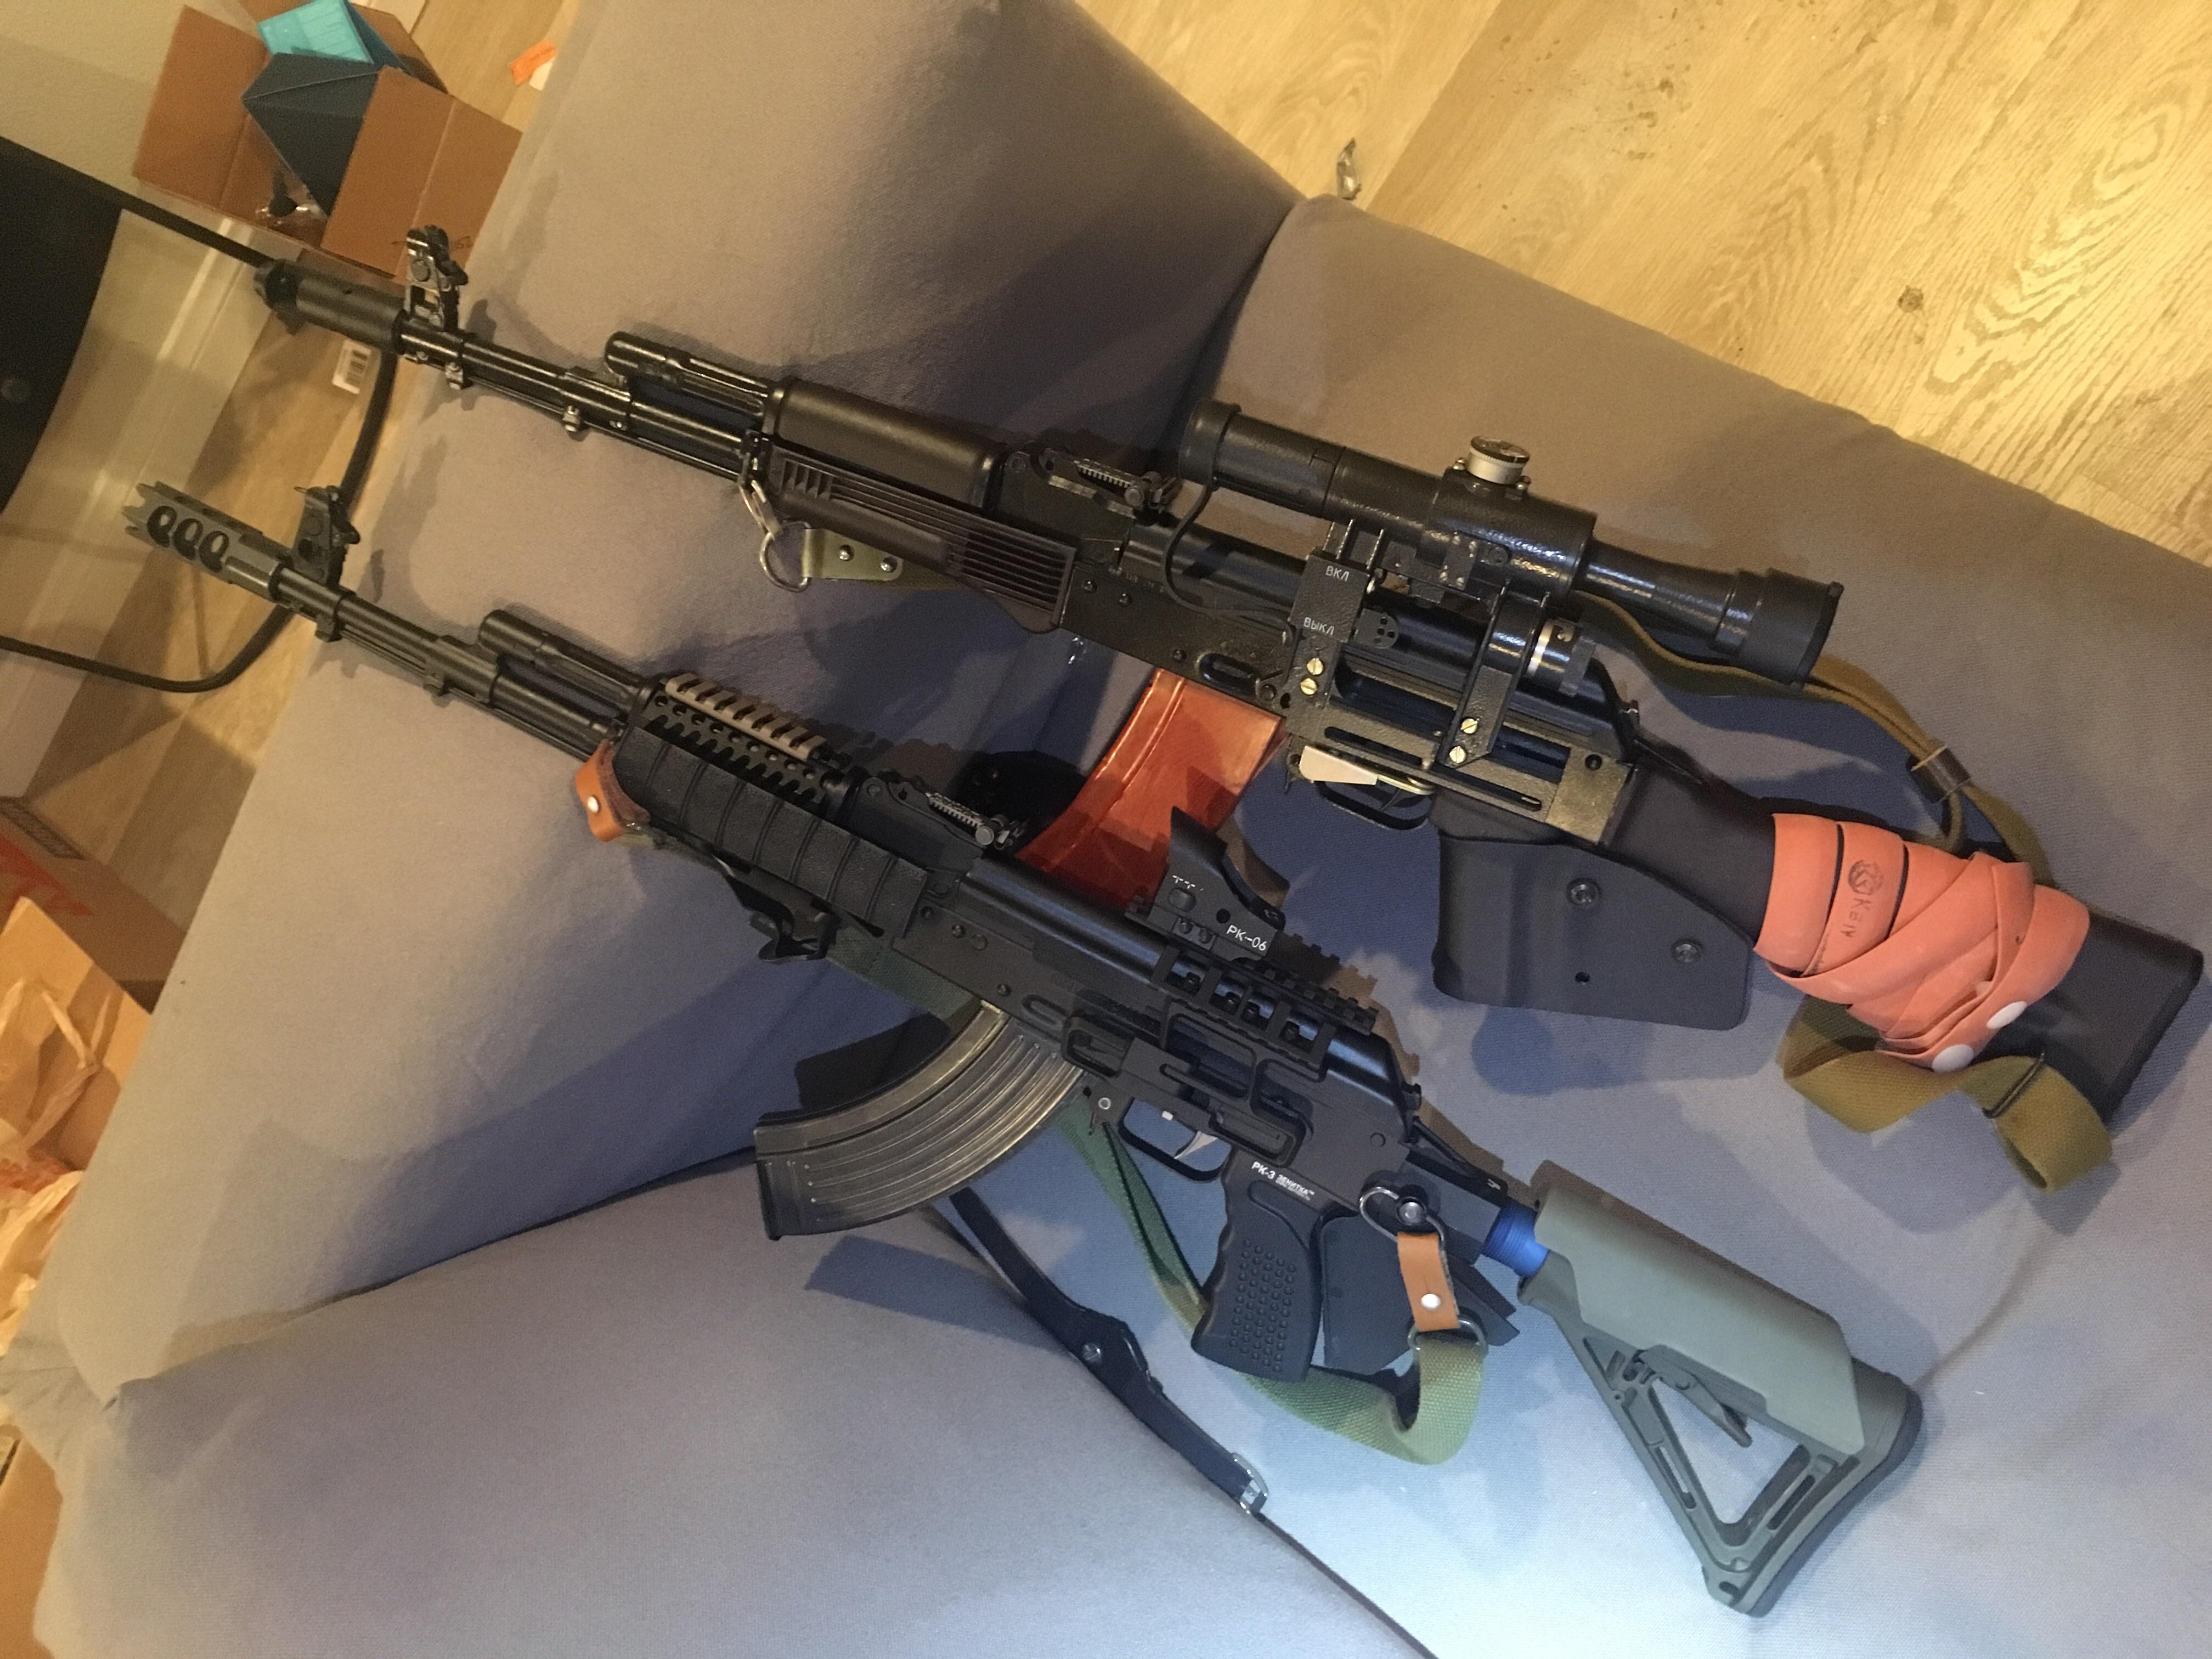 Two different AK guns